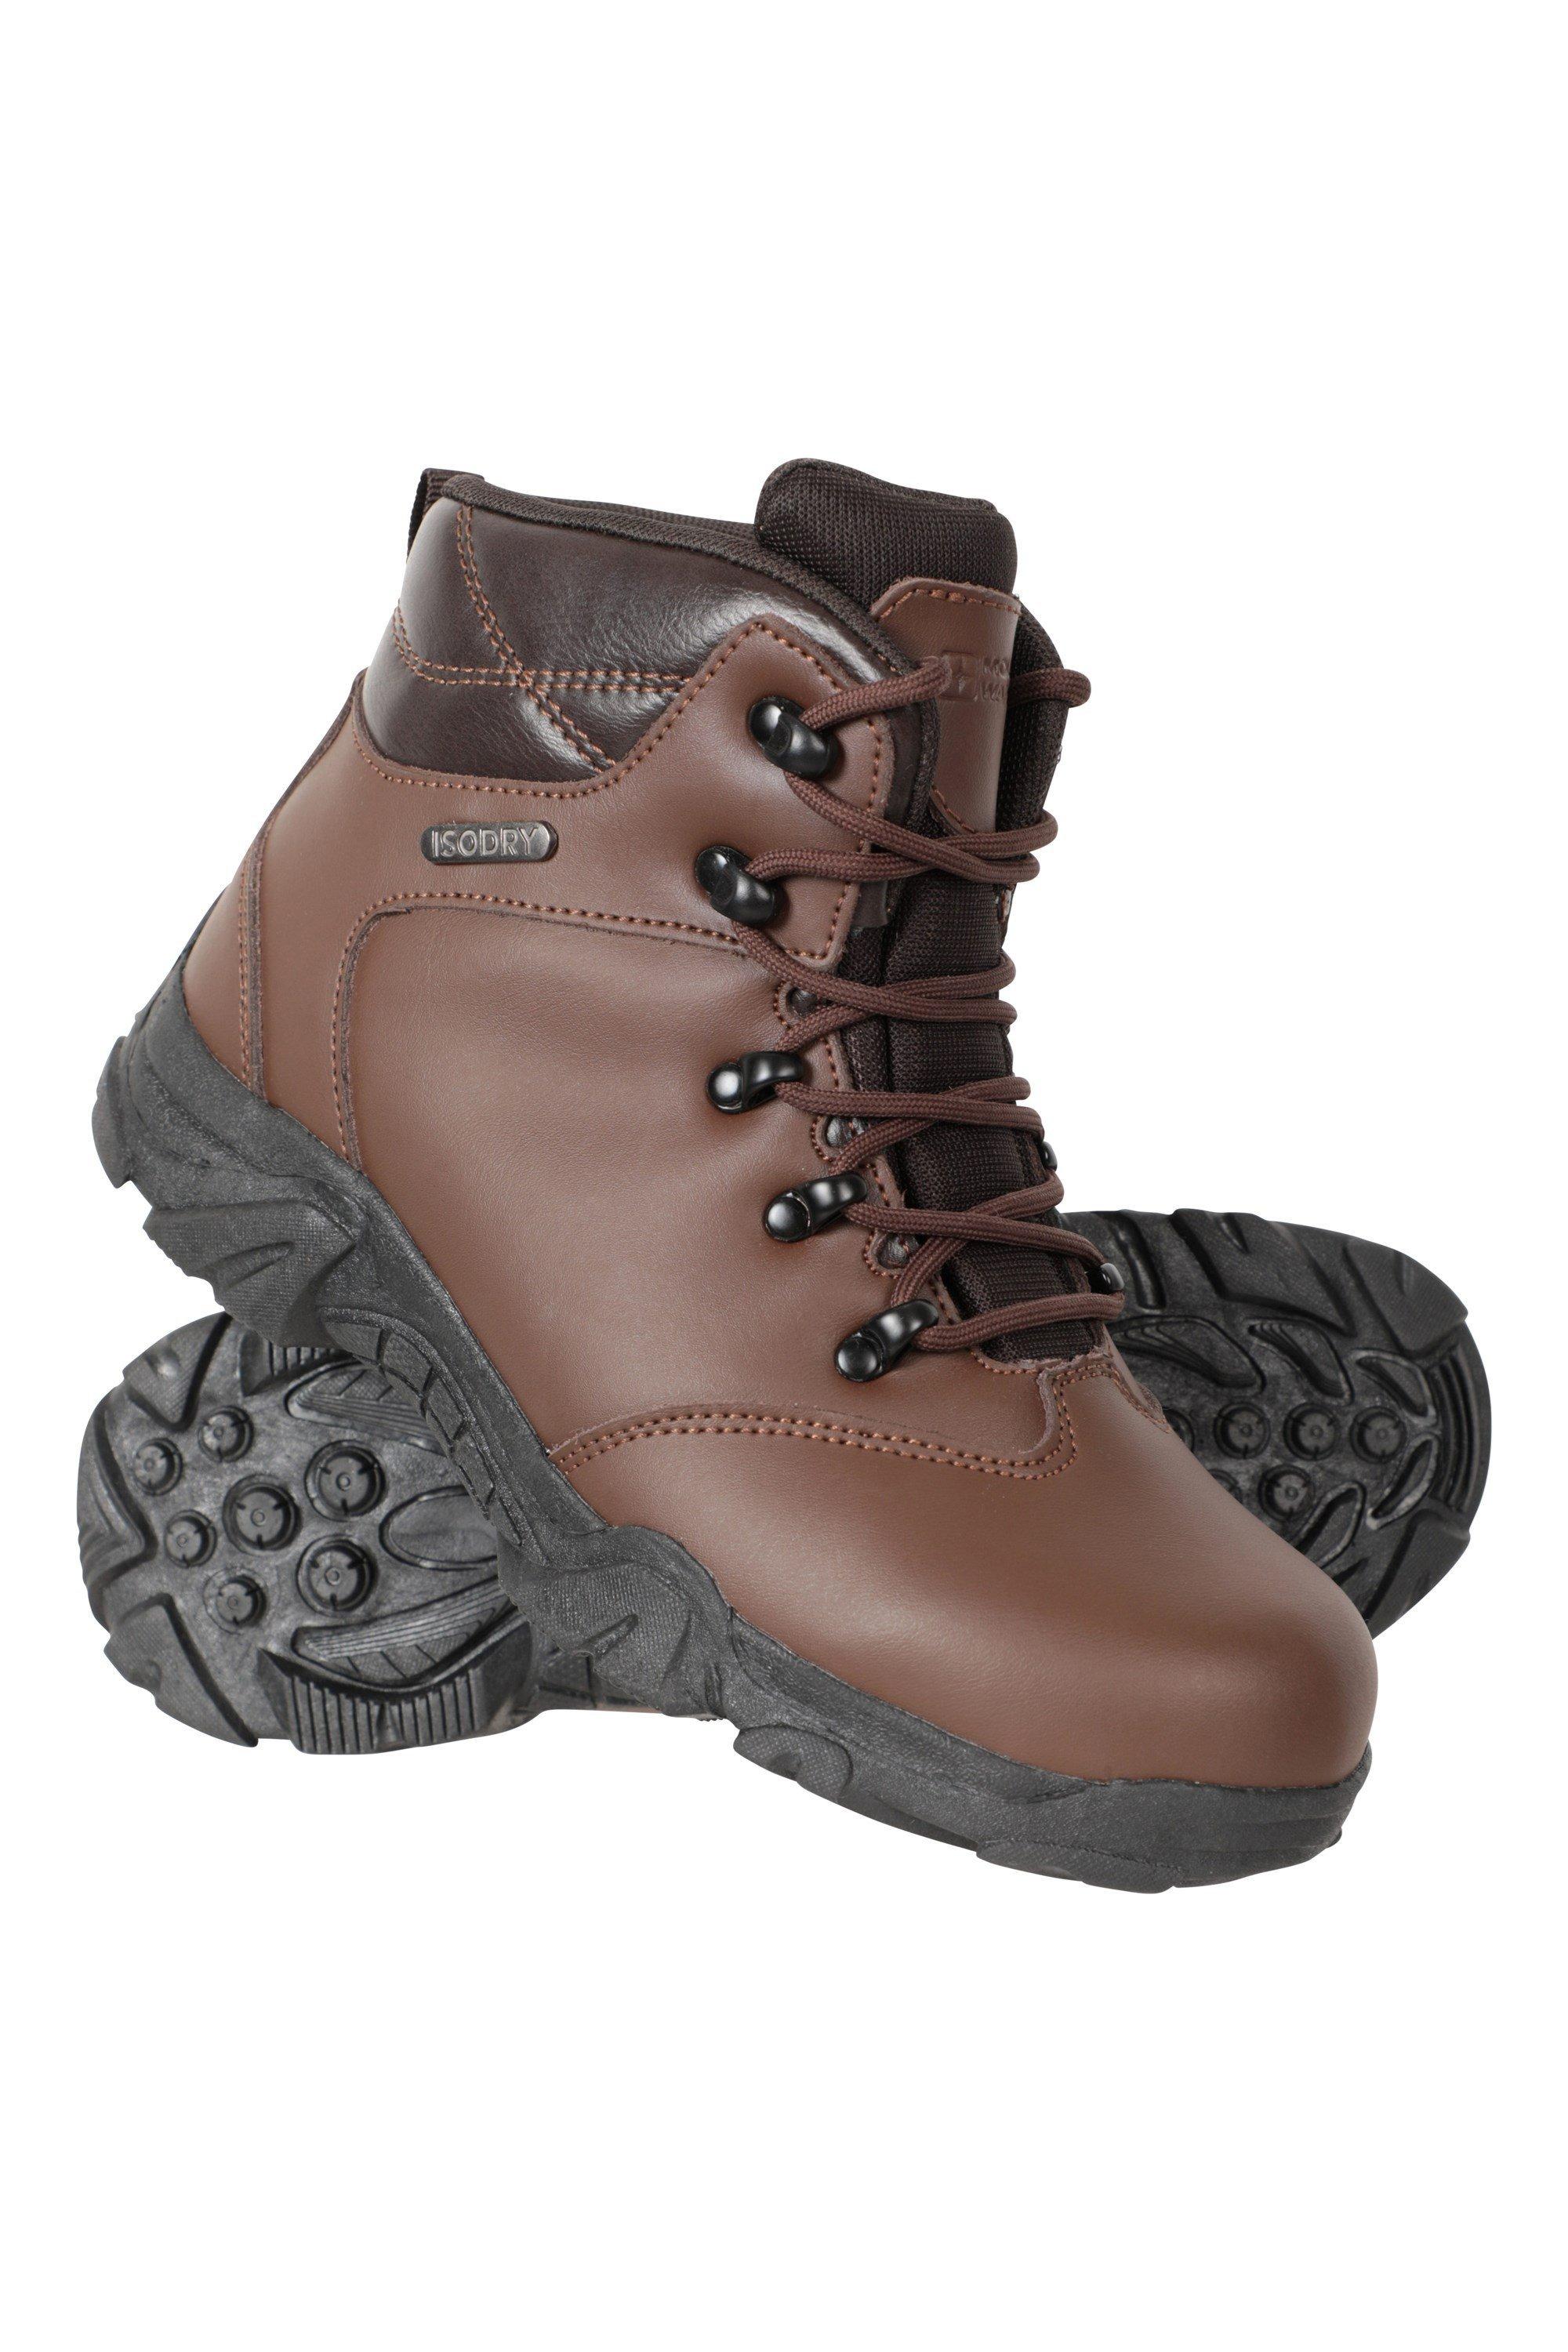 Водонепроницаемые кожаные прогулочные ботинки для походов Mountain Warehouse, коричневый цена и фото